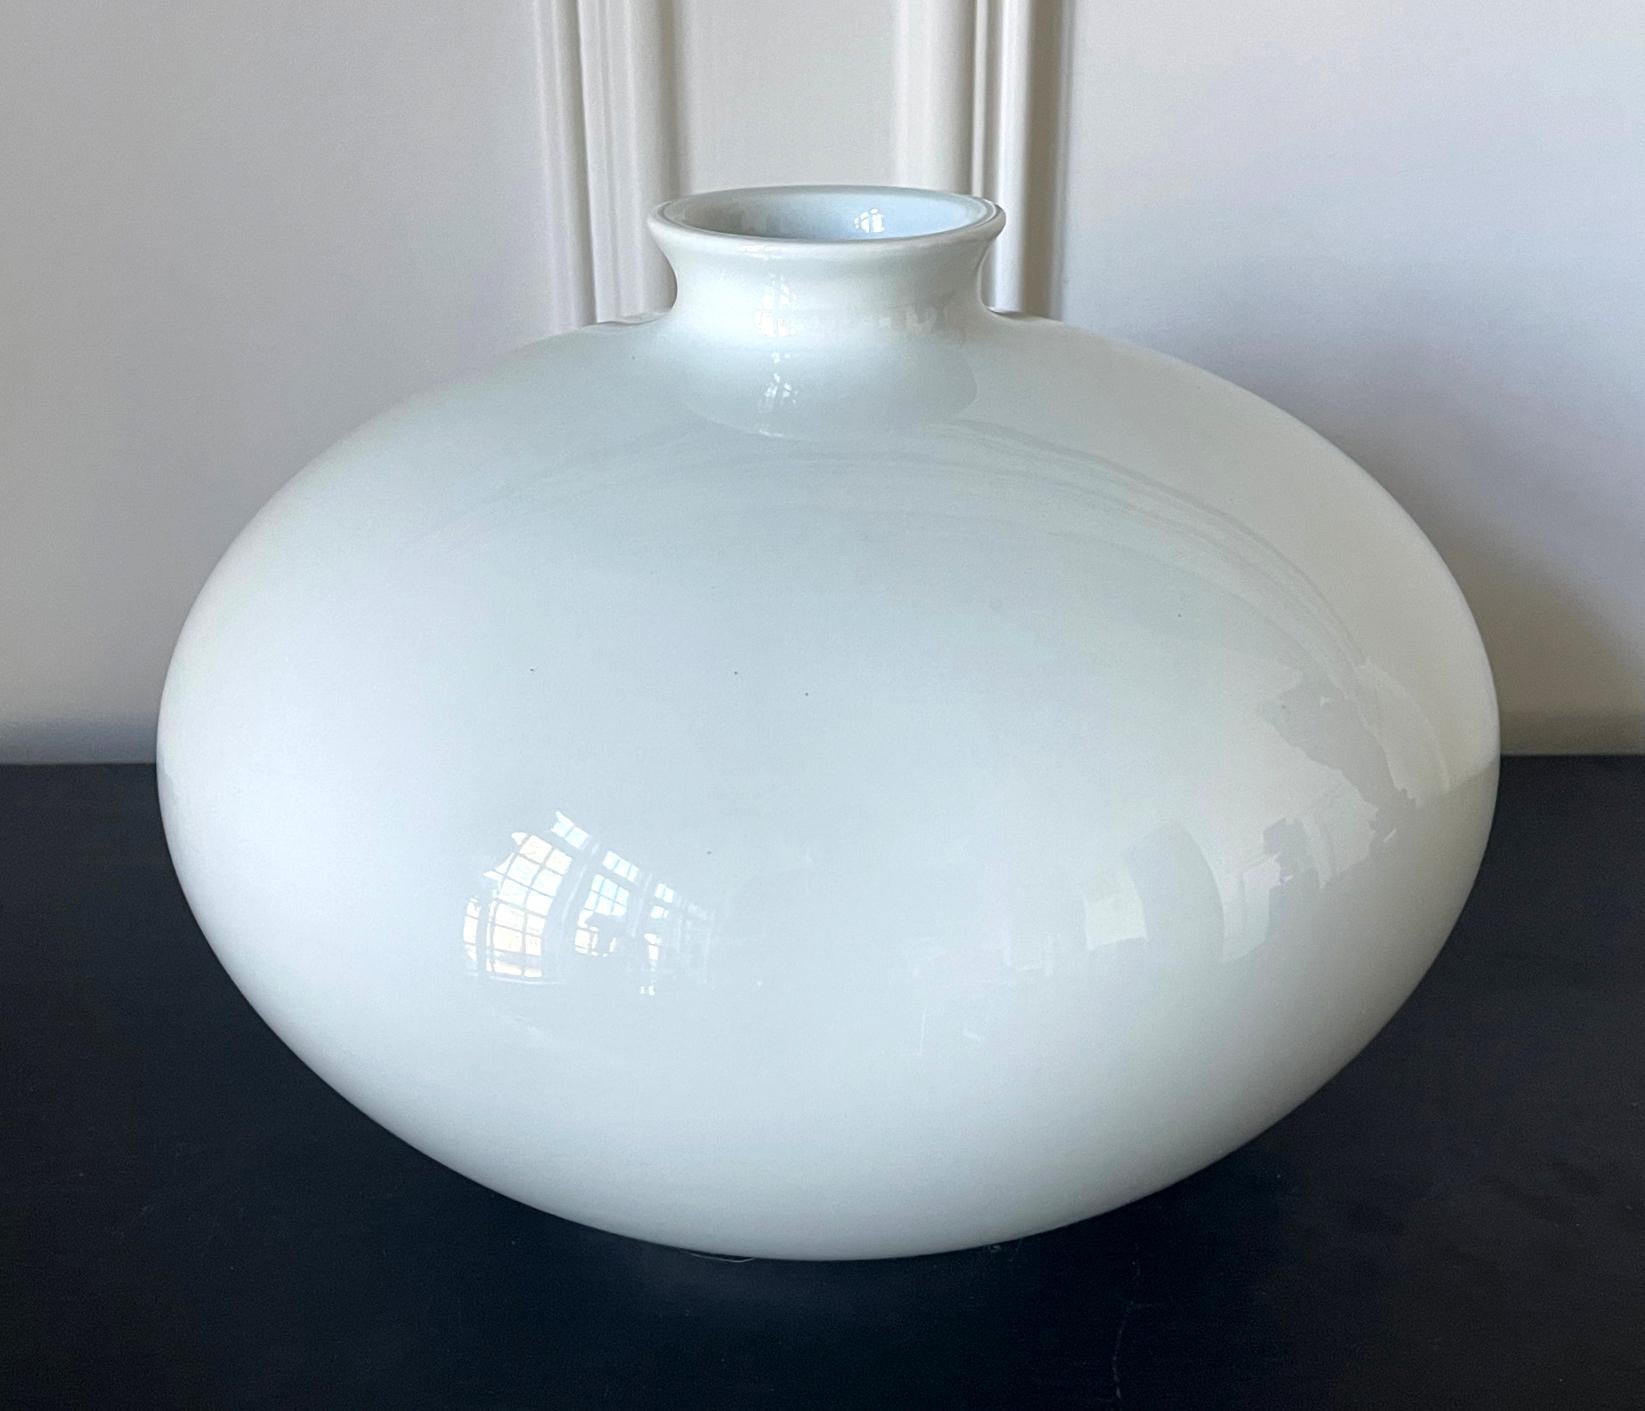 Un grand vase en porcelaine blanche émaillée en forme de jarre de l'artiste céramiste japonais Inoue Manji (Japonais, né en 1929). De forme minimaliste, le vase est d'un blanc pur avec une teinte bleue très subtile et d'une forme parfaite proche de